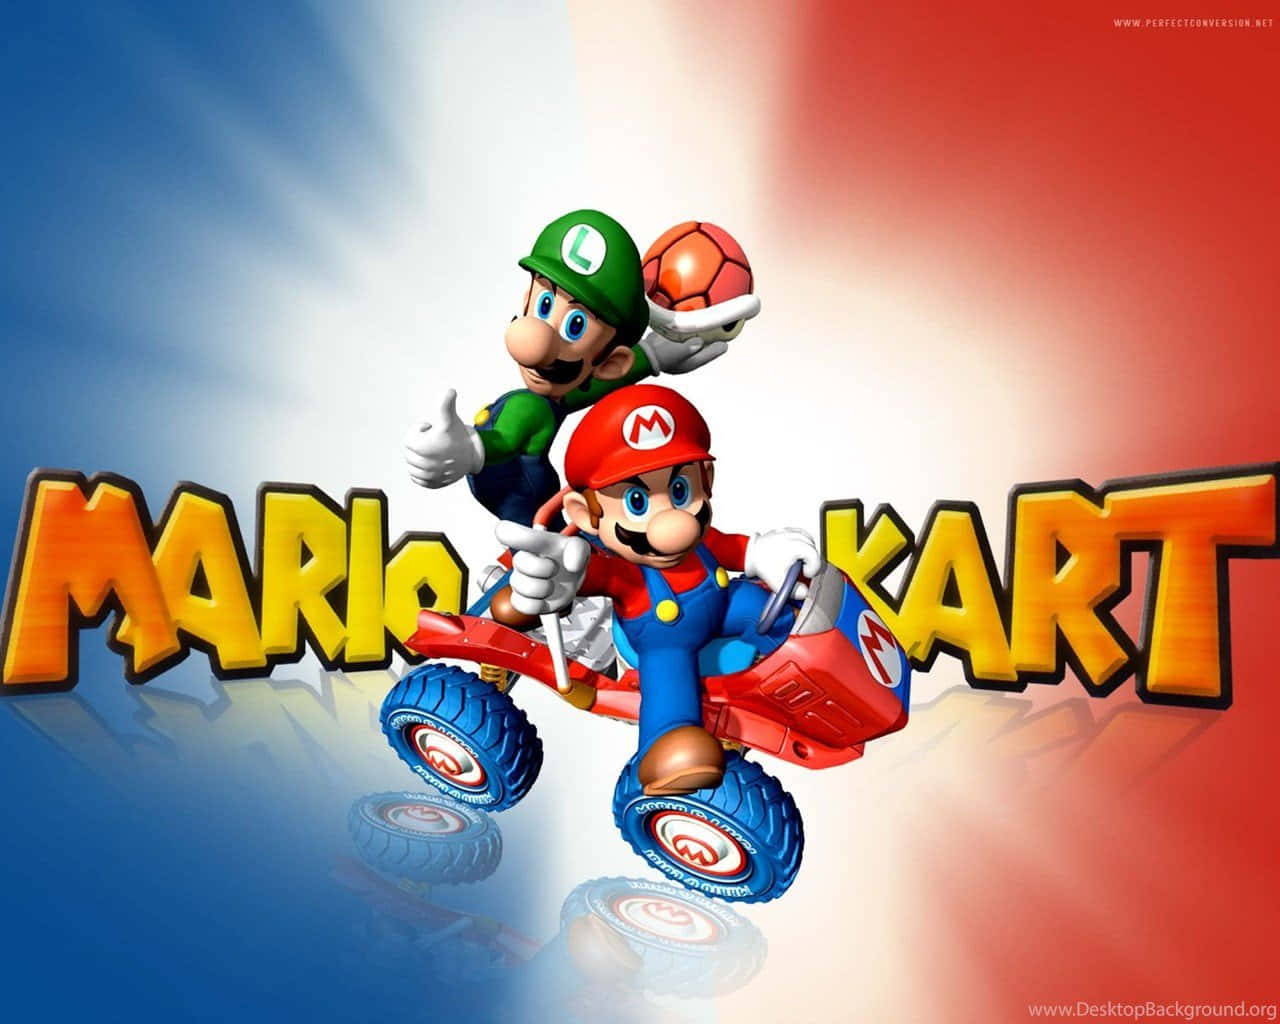 Kørgennem Mushroom Kingdom På Farverige Karter I Mario Kart.